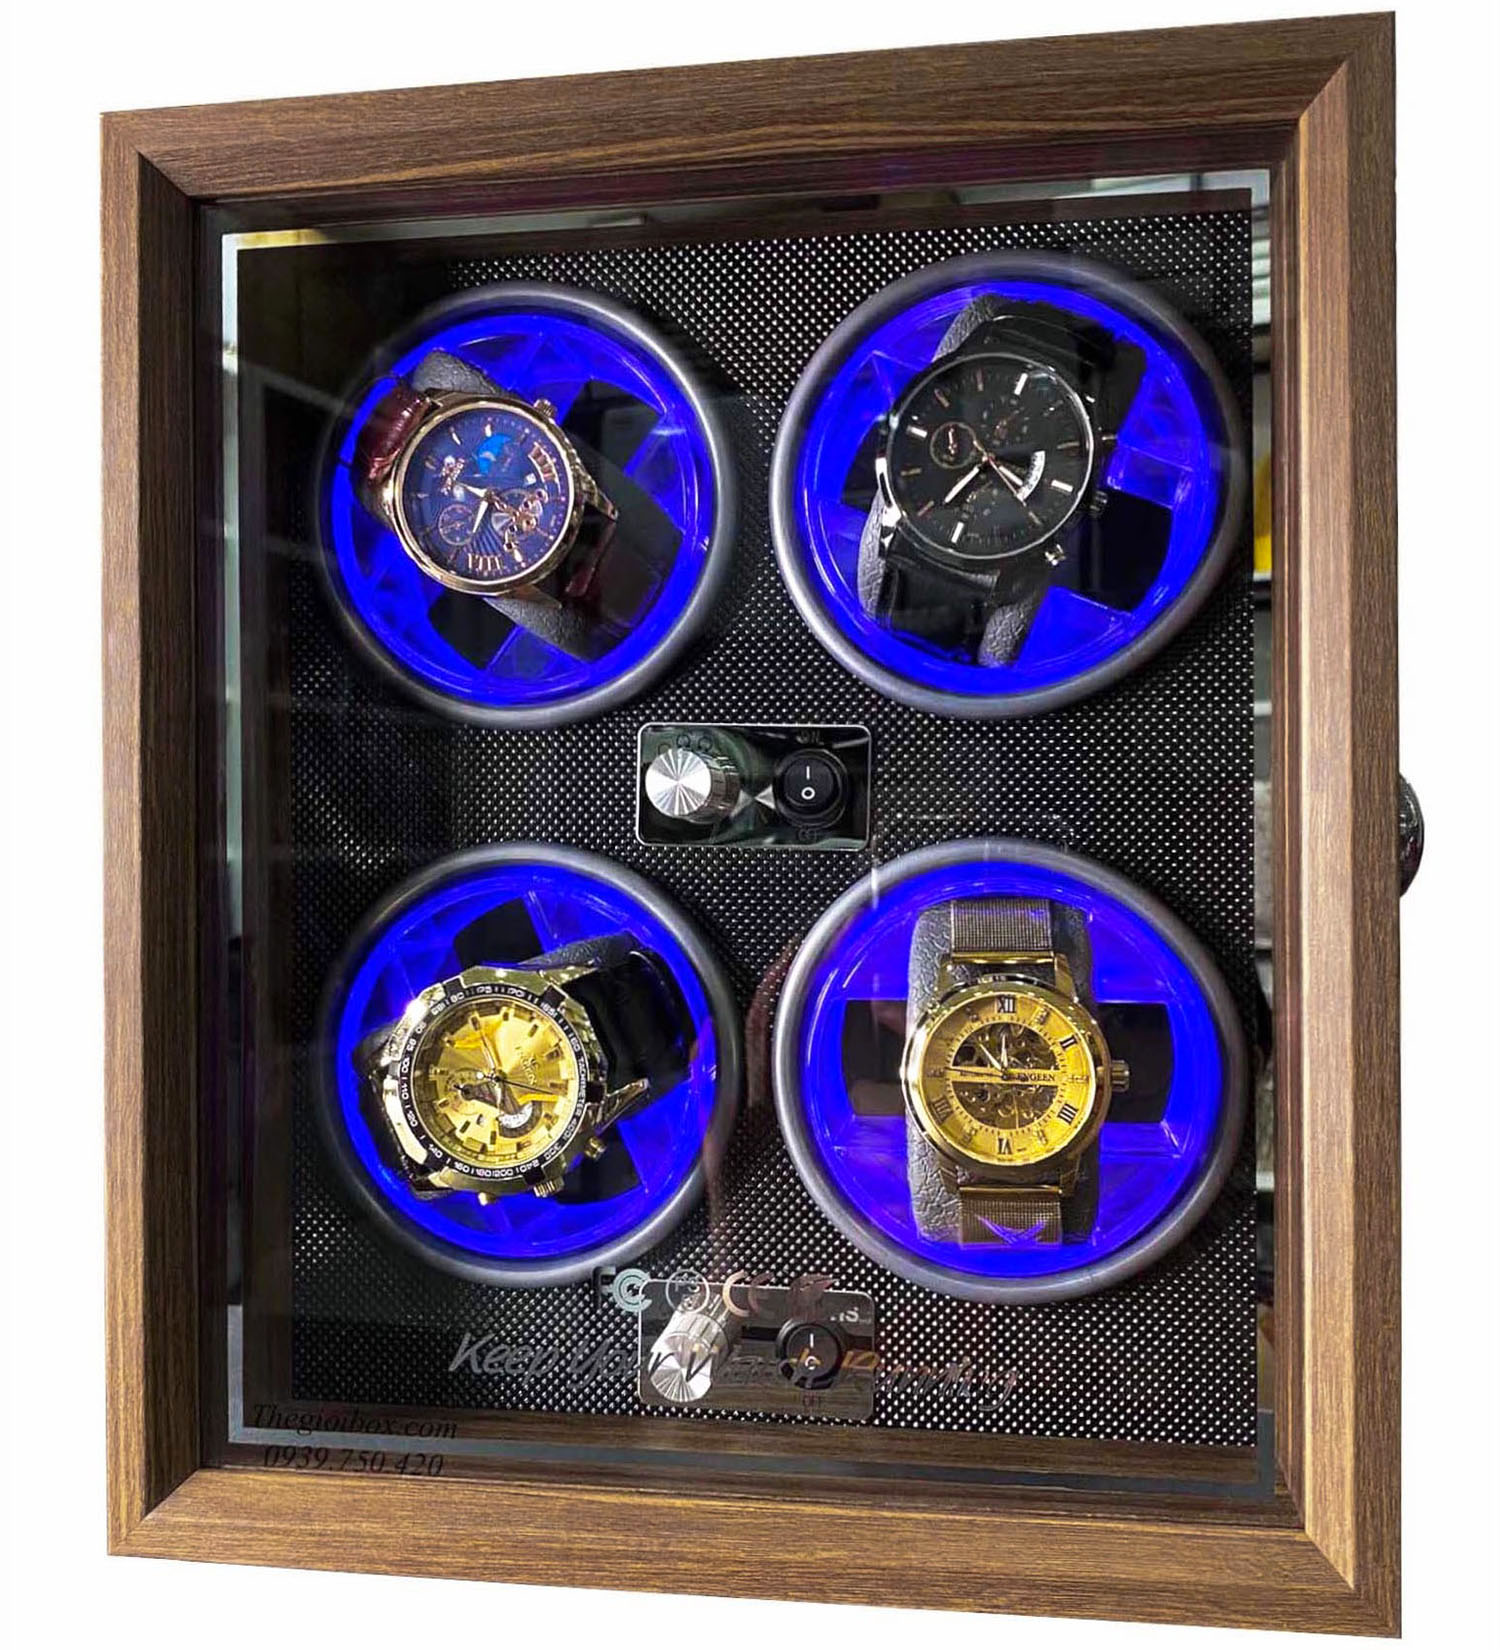 Tủ-Hộp đồng hồ cơ 4 ngăn xoay - ngoại thất vỏ gỗ sần + nội thất nhựa cứng vân kim cương - giá rẻ - có đèn LED